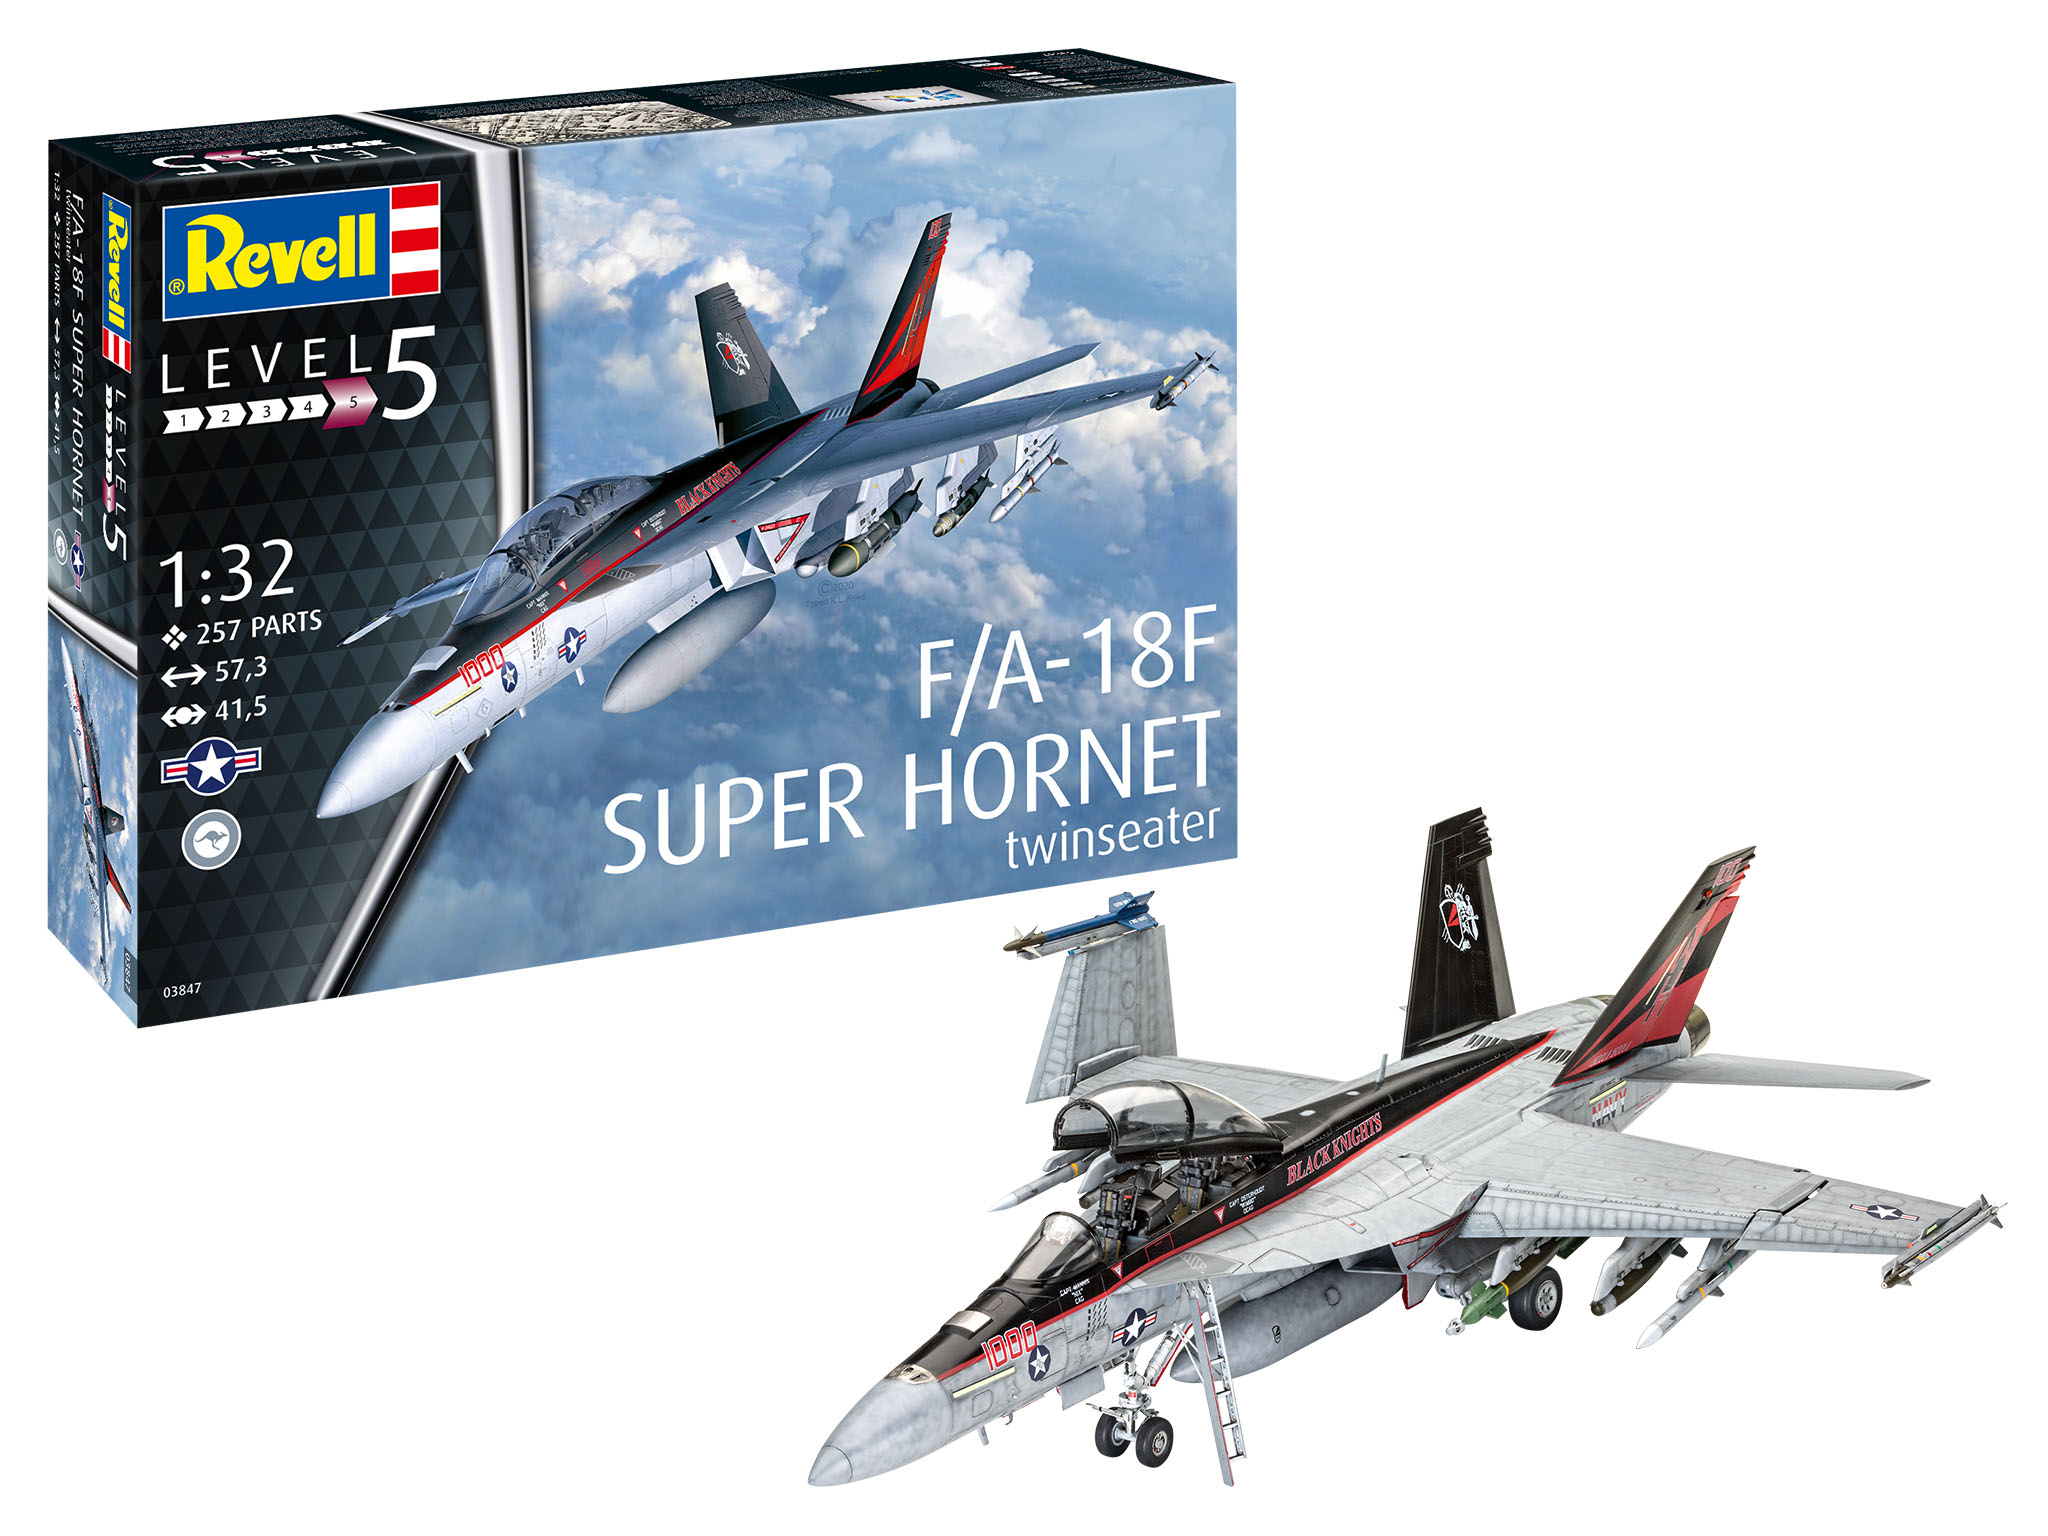 Revell F/A-18F Super Hornet in 1:32 bouwpakket (Beste koop deze maand 60 euro, voordeel!)